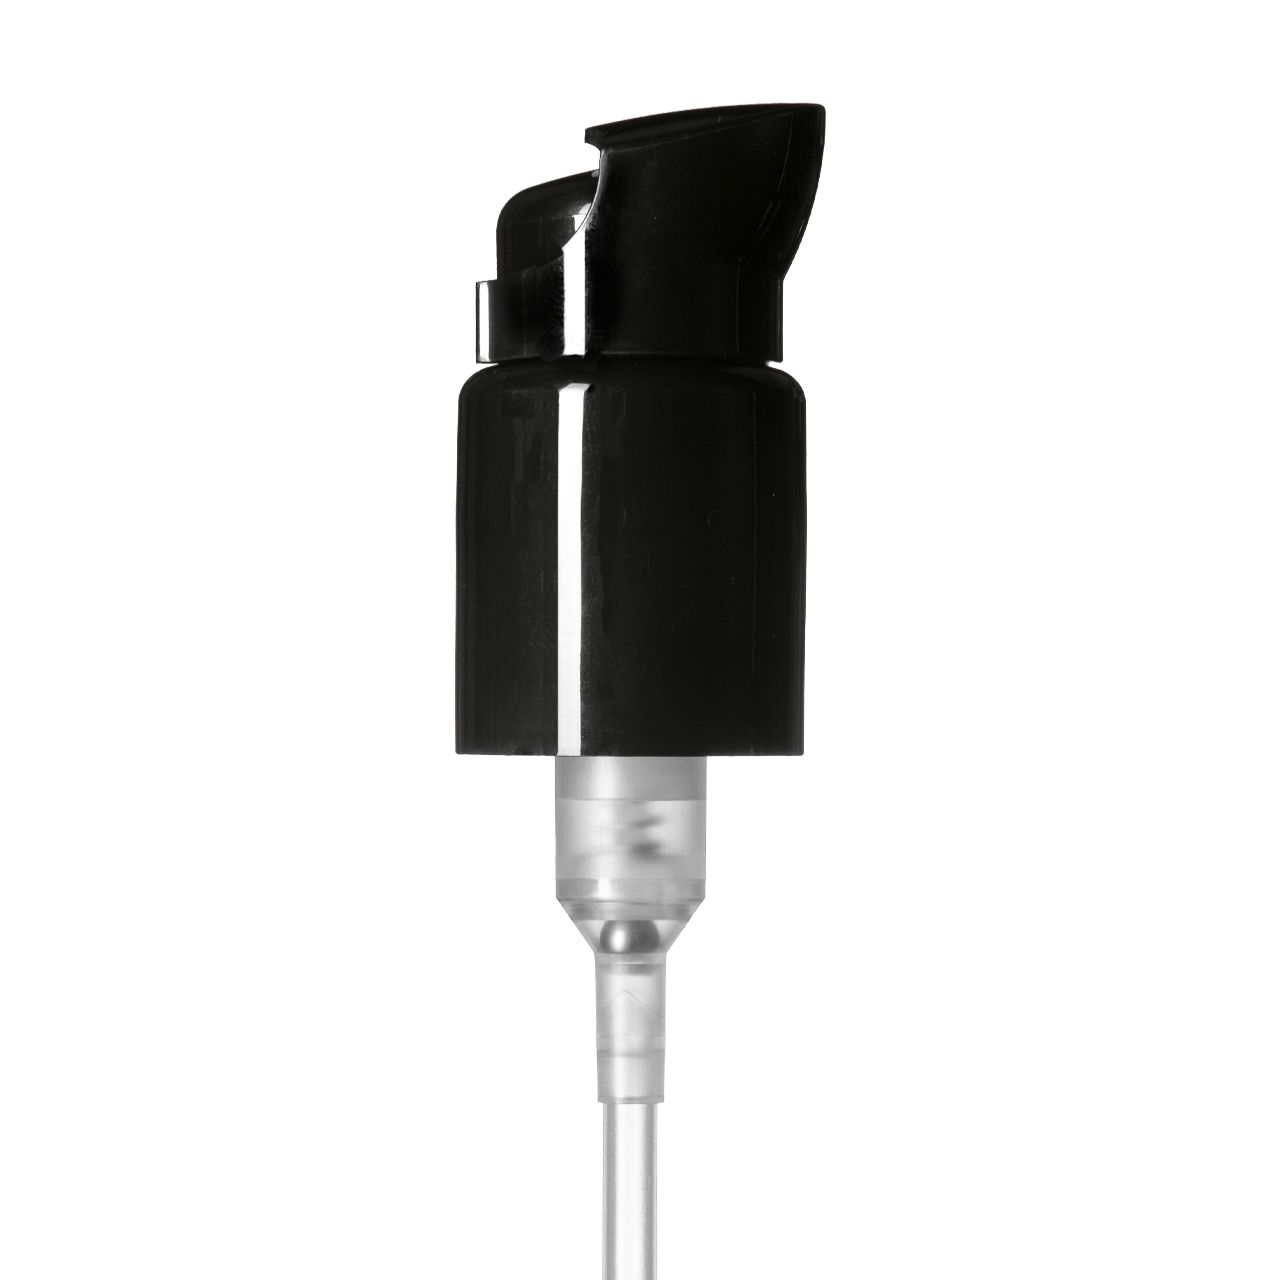 Lotion pump Metropolitan 24/410, PP, black, dose 0.50ml, black security clip (Virgo 200)   